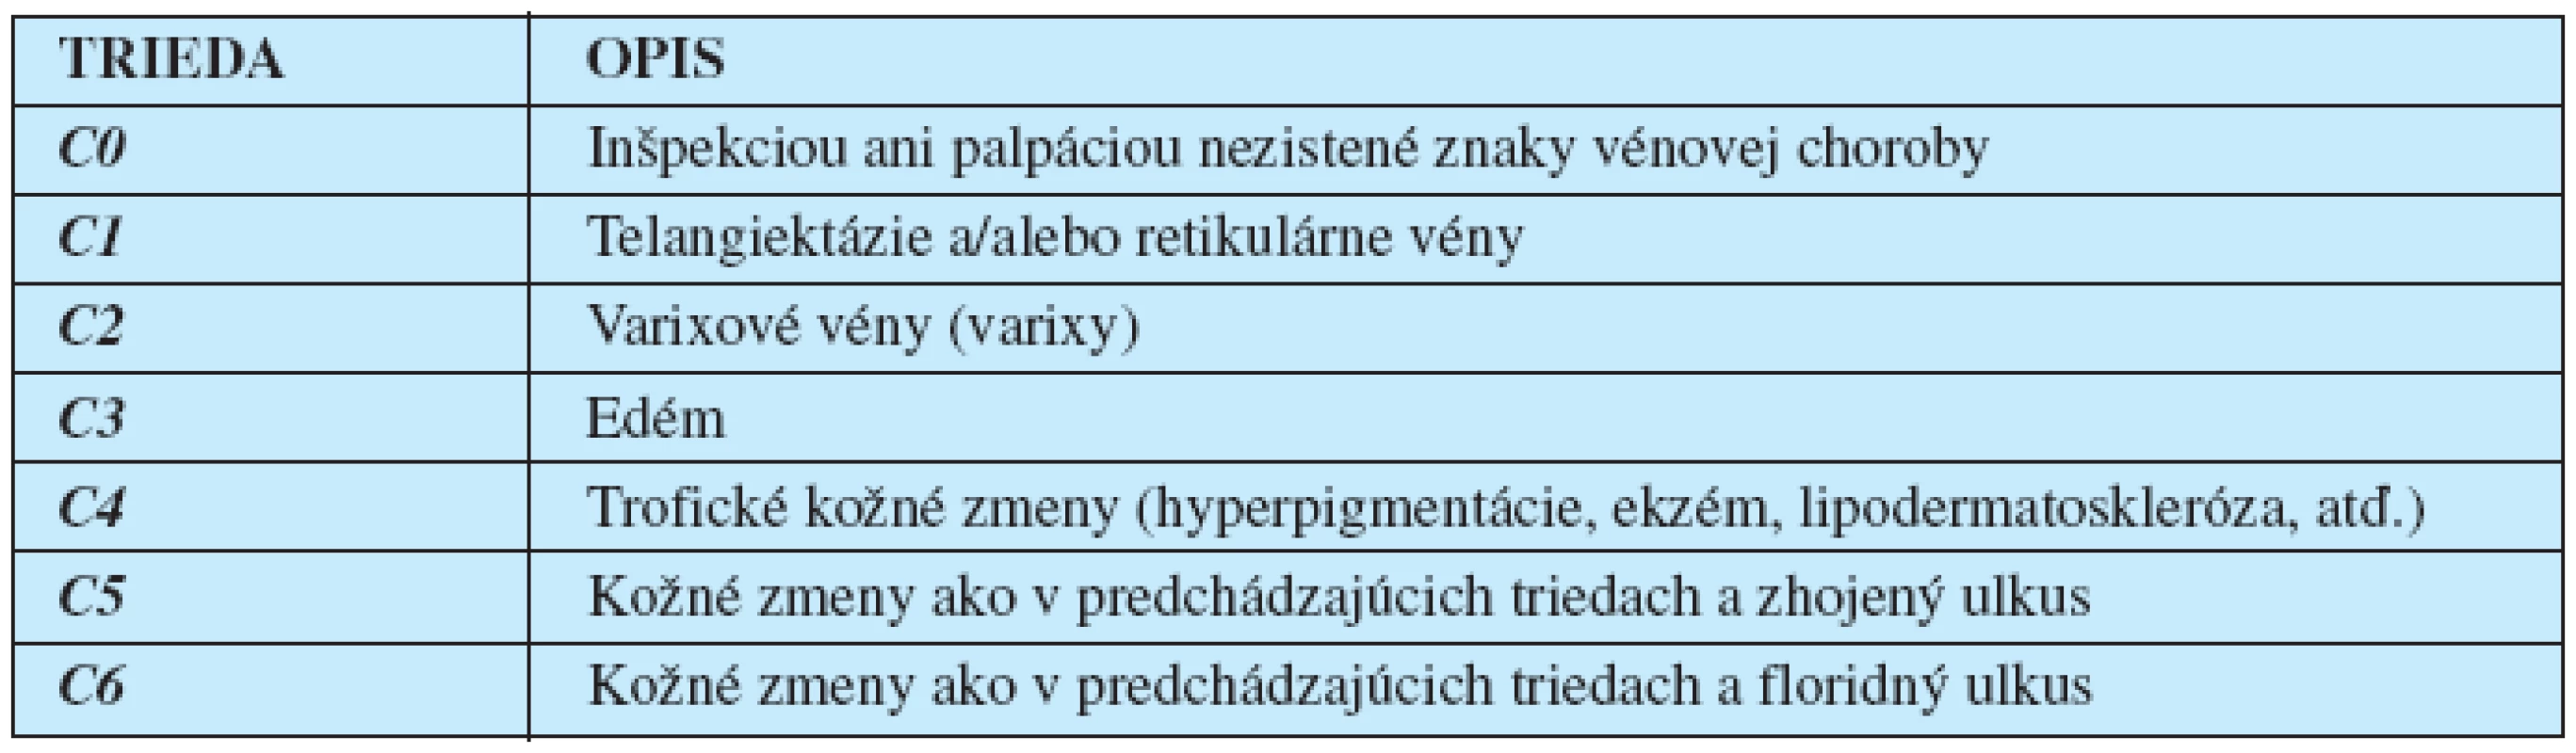 Klinická klasifikácia chronickej vénovej choroby dolných končatín podľa havajskej „CEAP“ klasifikácie z r. 1994 (1). Doplňuje sa o asymptomatickú formu (CA) a symptomatickú formu (CS).